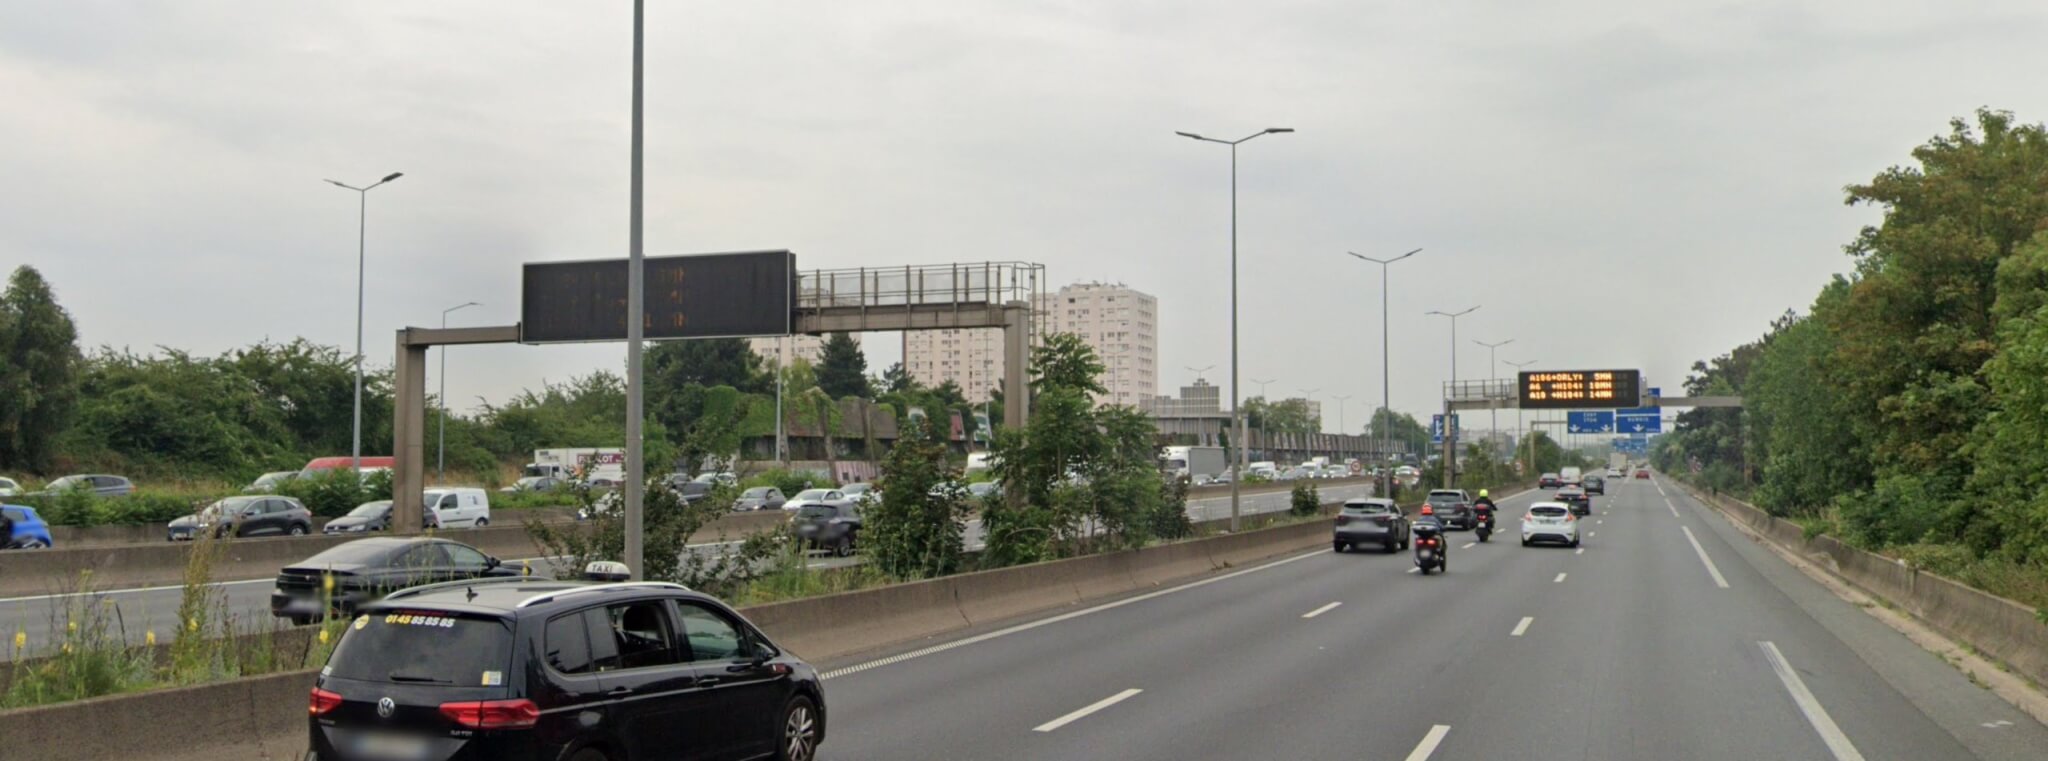 L'autoroute A6b fermée entre Paris et L'Haÿ-les-Roses après un incendie de tunnel